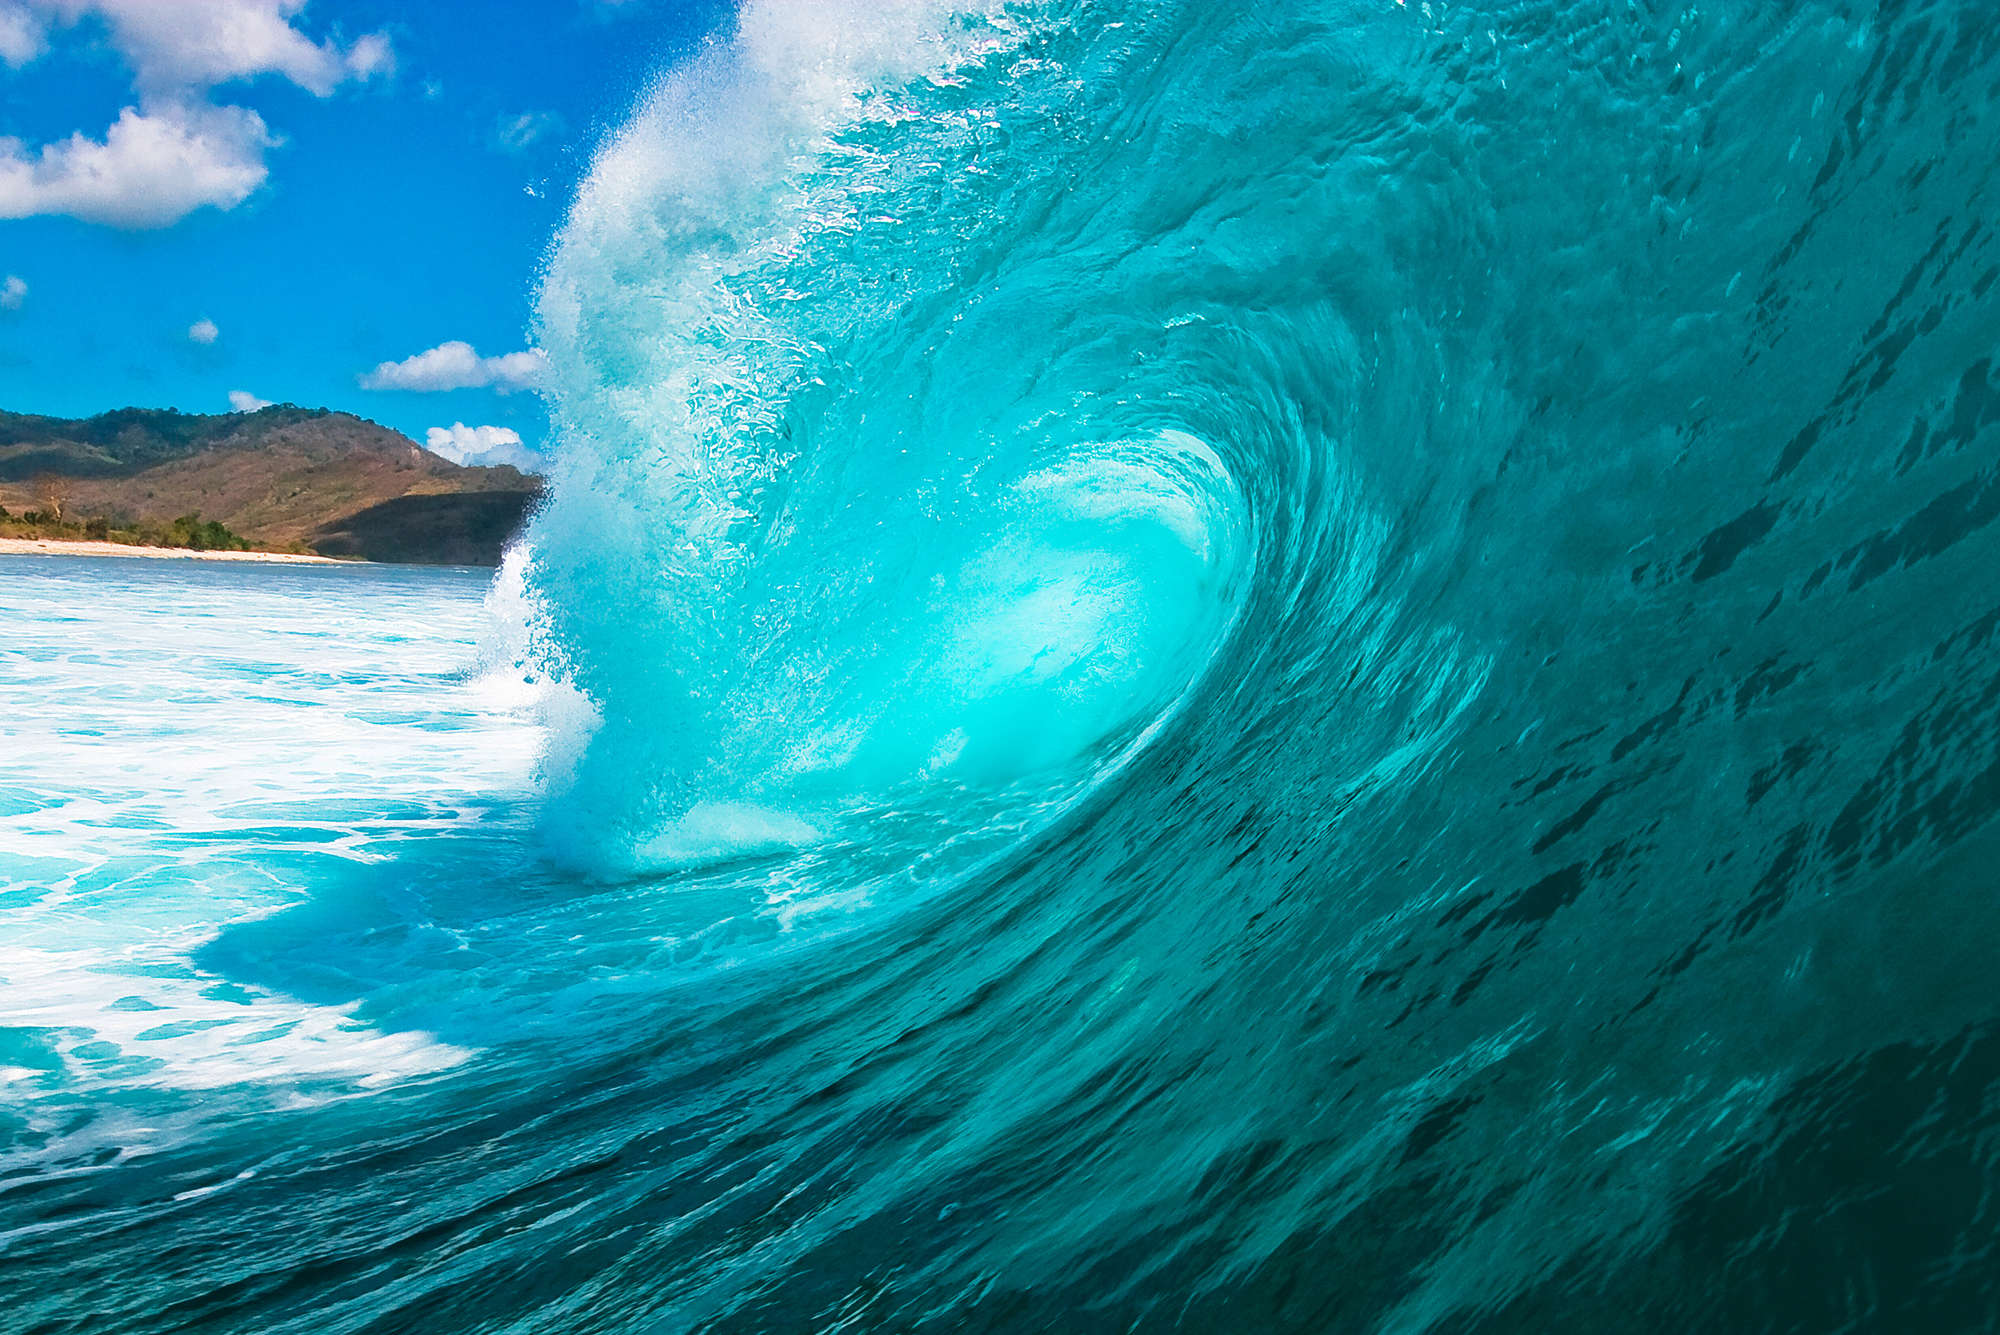             Fototapete Meer mit großer Welle – Strukturiertes Vlies
        